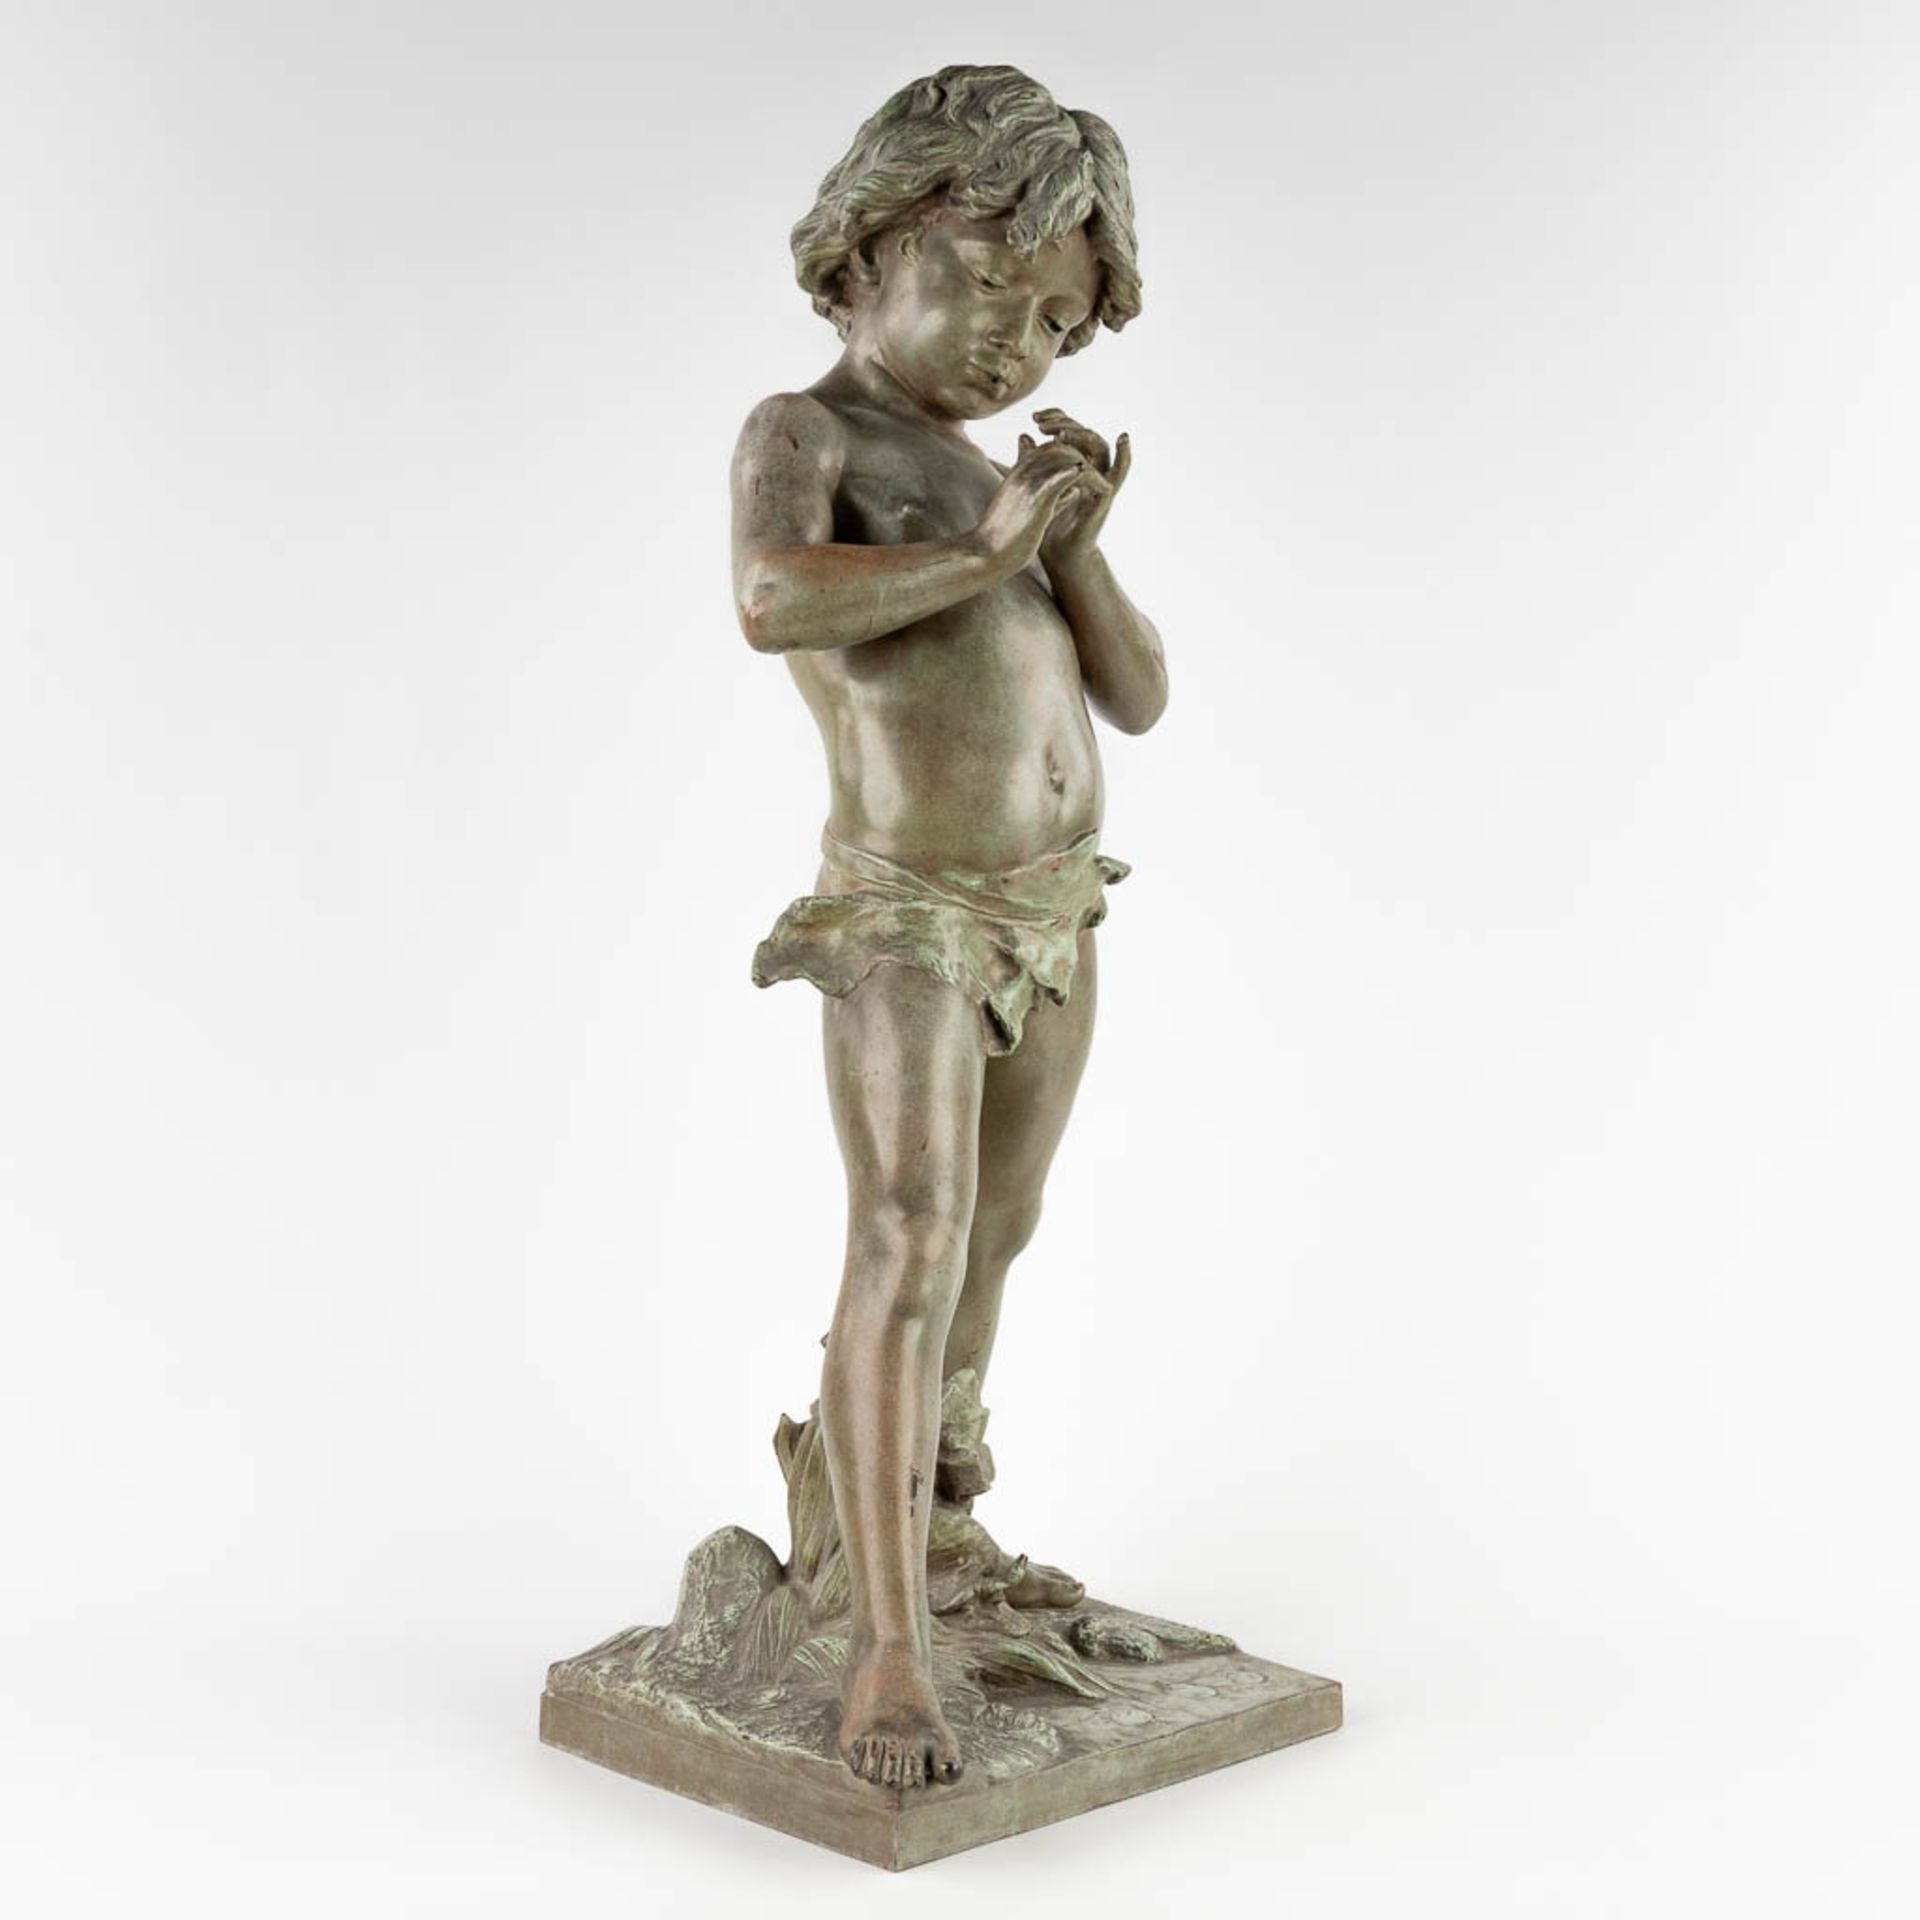 Jean-Louis GRÉGOIRE (1840-1890)(After) 'Boy with whistle' (D:27 x W:30 x H:80 cm)